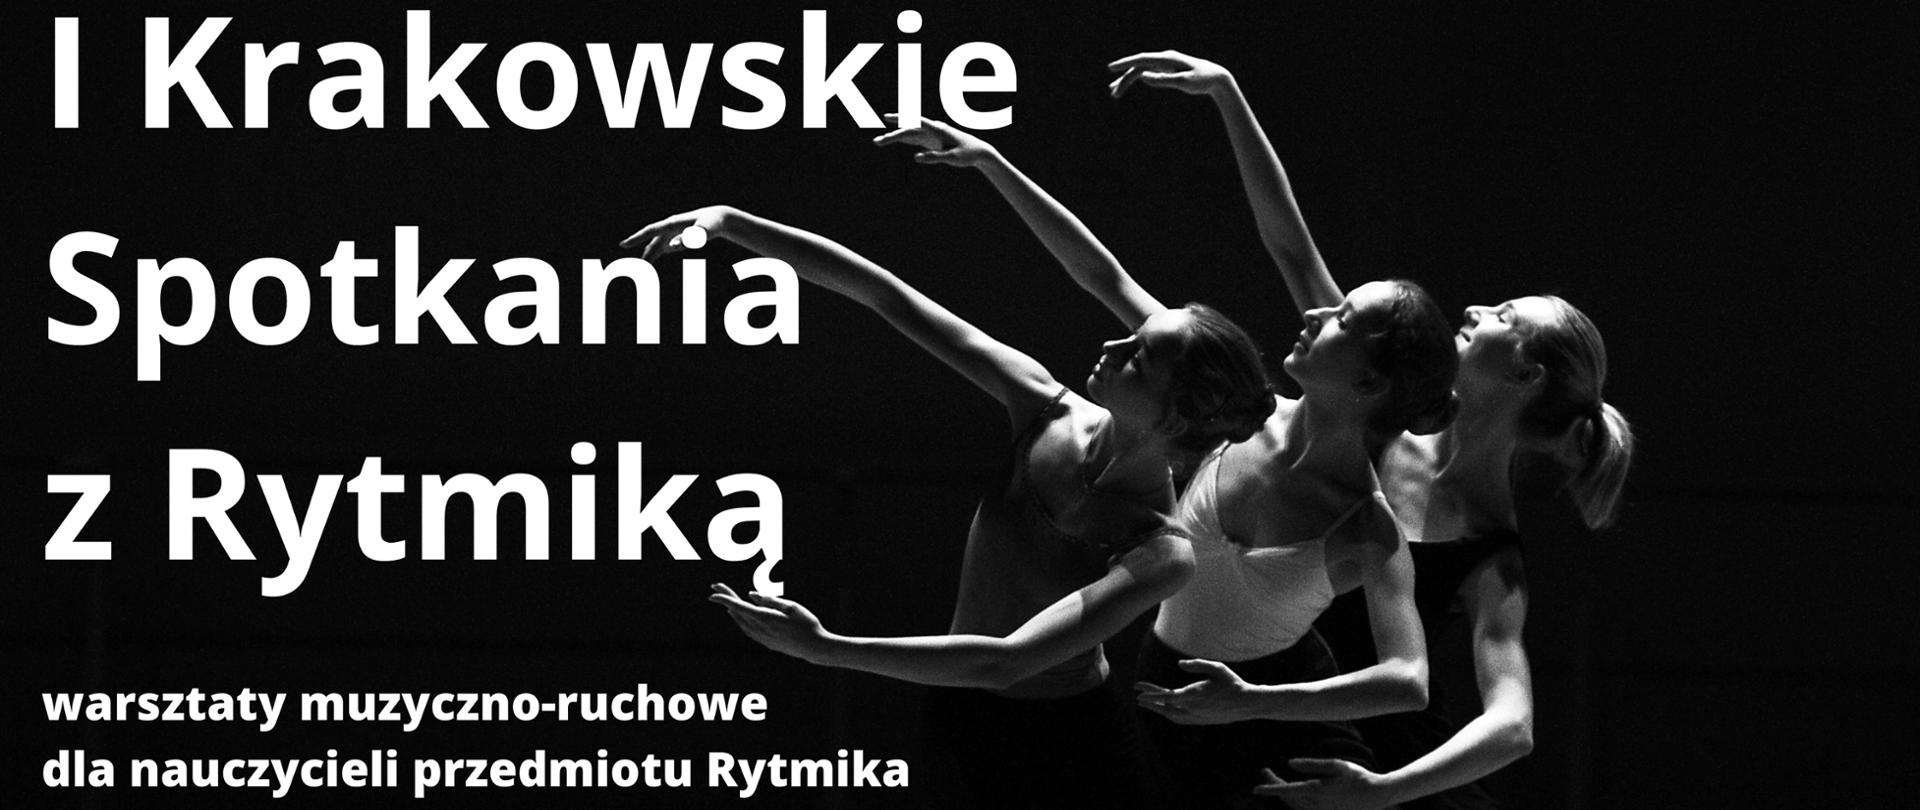 na czarnym tle trzy dziewczyny w tanecznych pozach i biały napis I Krakowskie Spotkania z Rytmiką